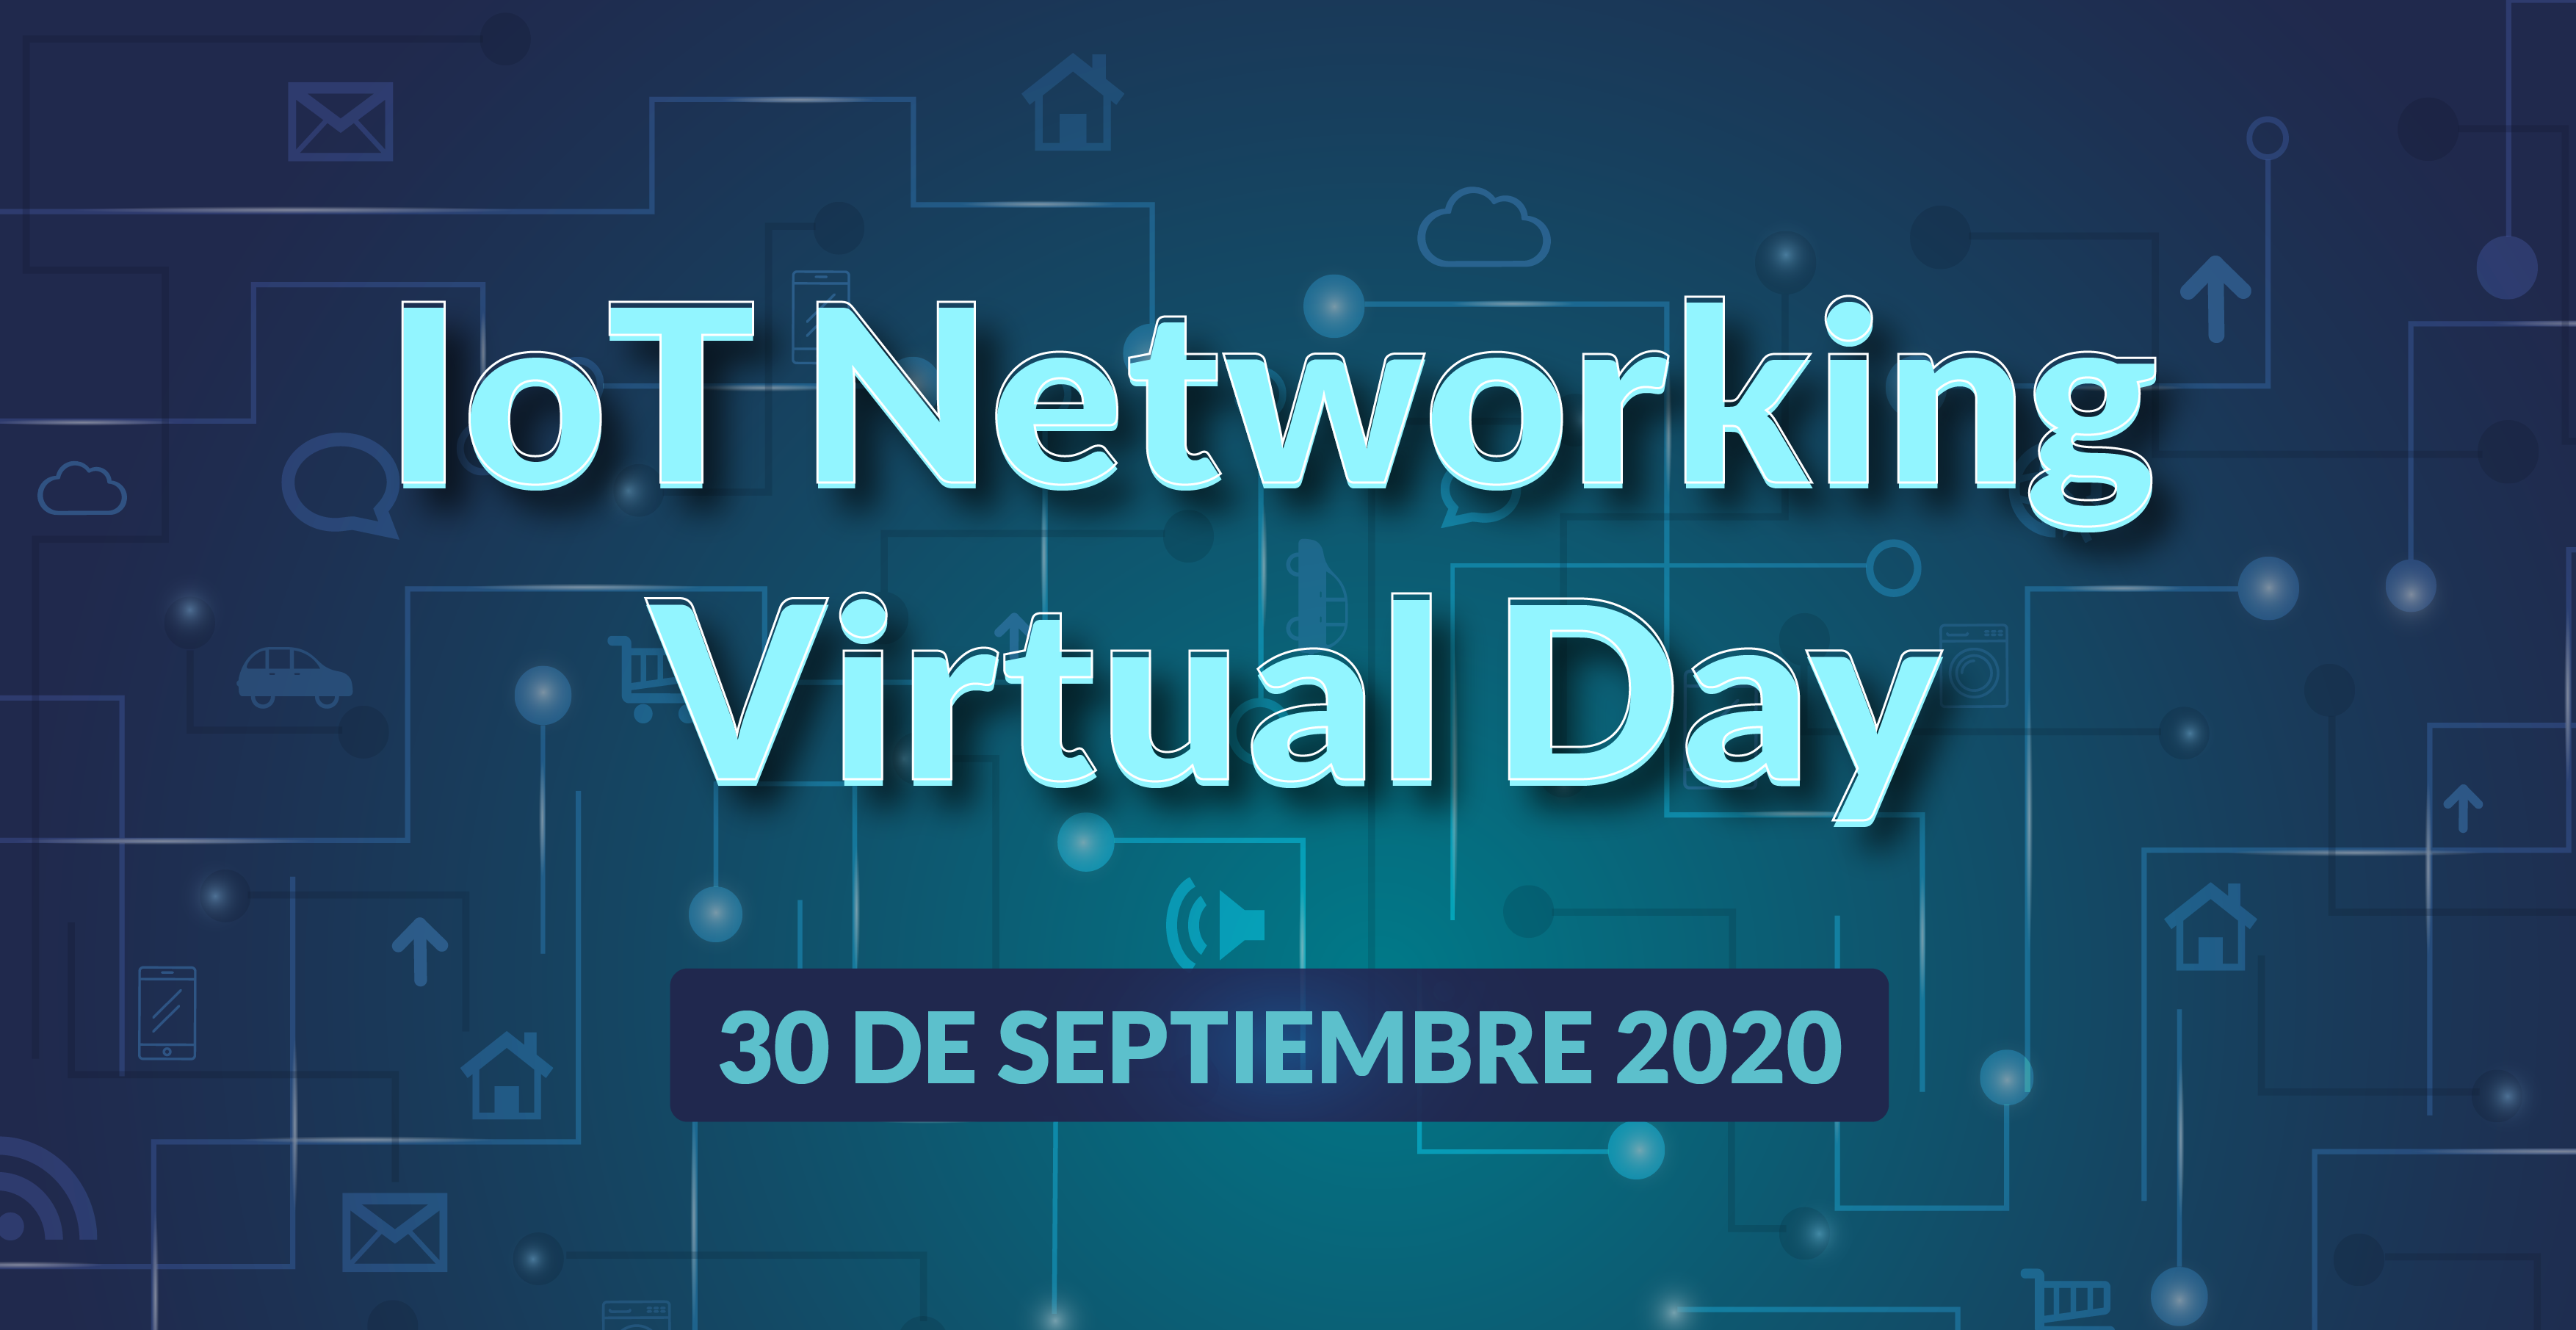 IoT Networking Virtual Day tendrá lugar el 30 de septiembre